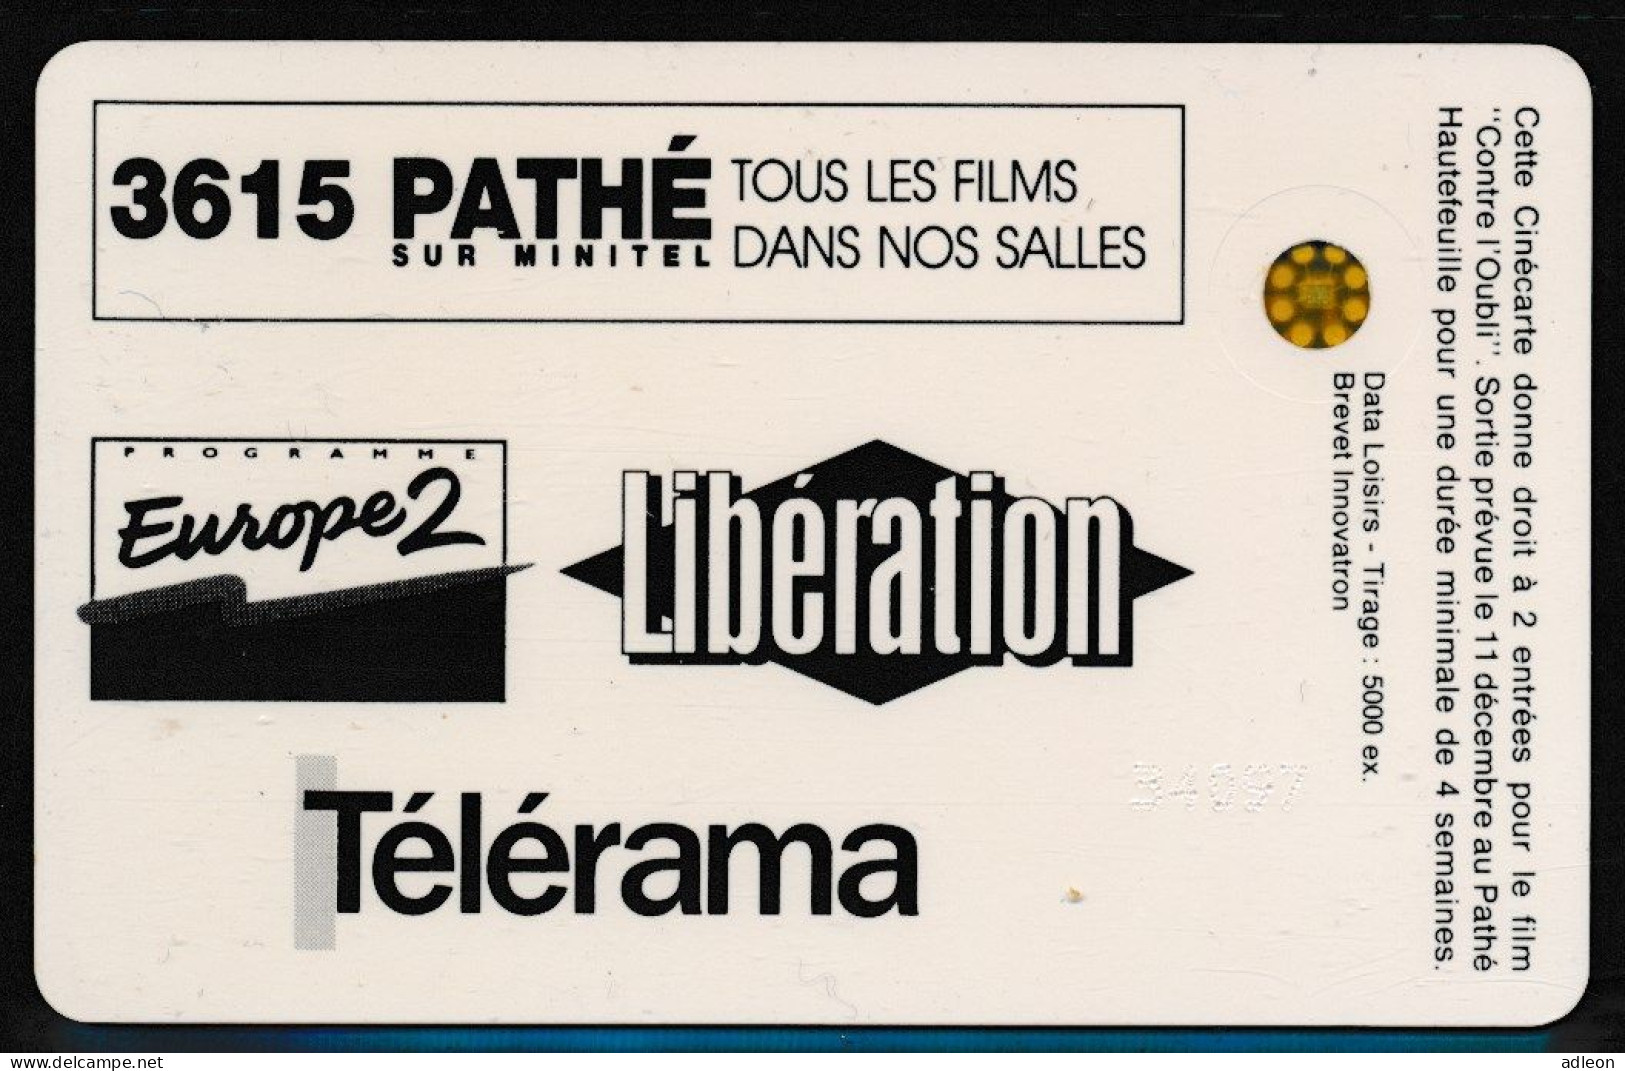 Cinécarte Pathé N°70 Amnesty International "Contre L'Oubli" - Movie Cards